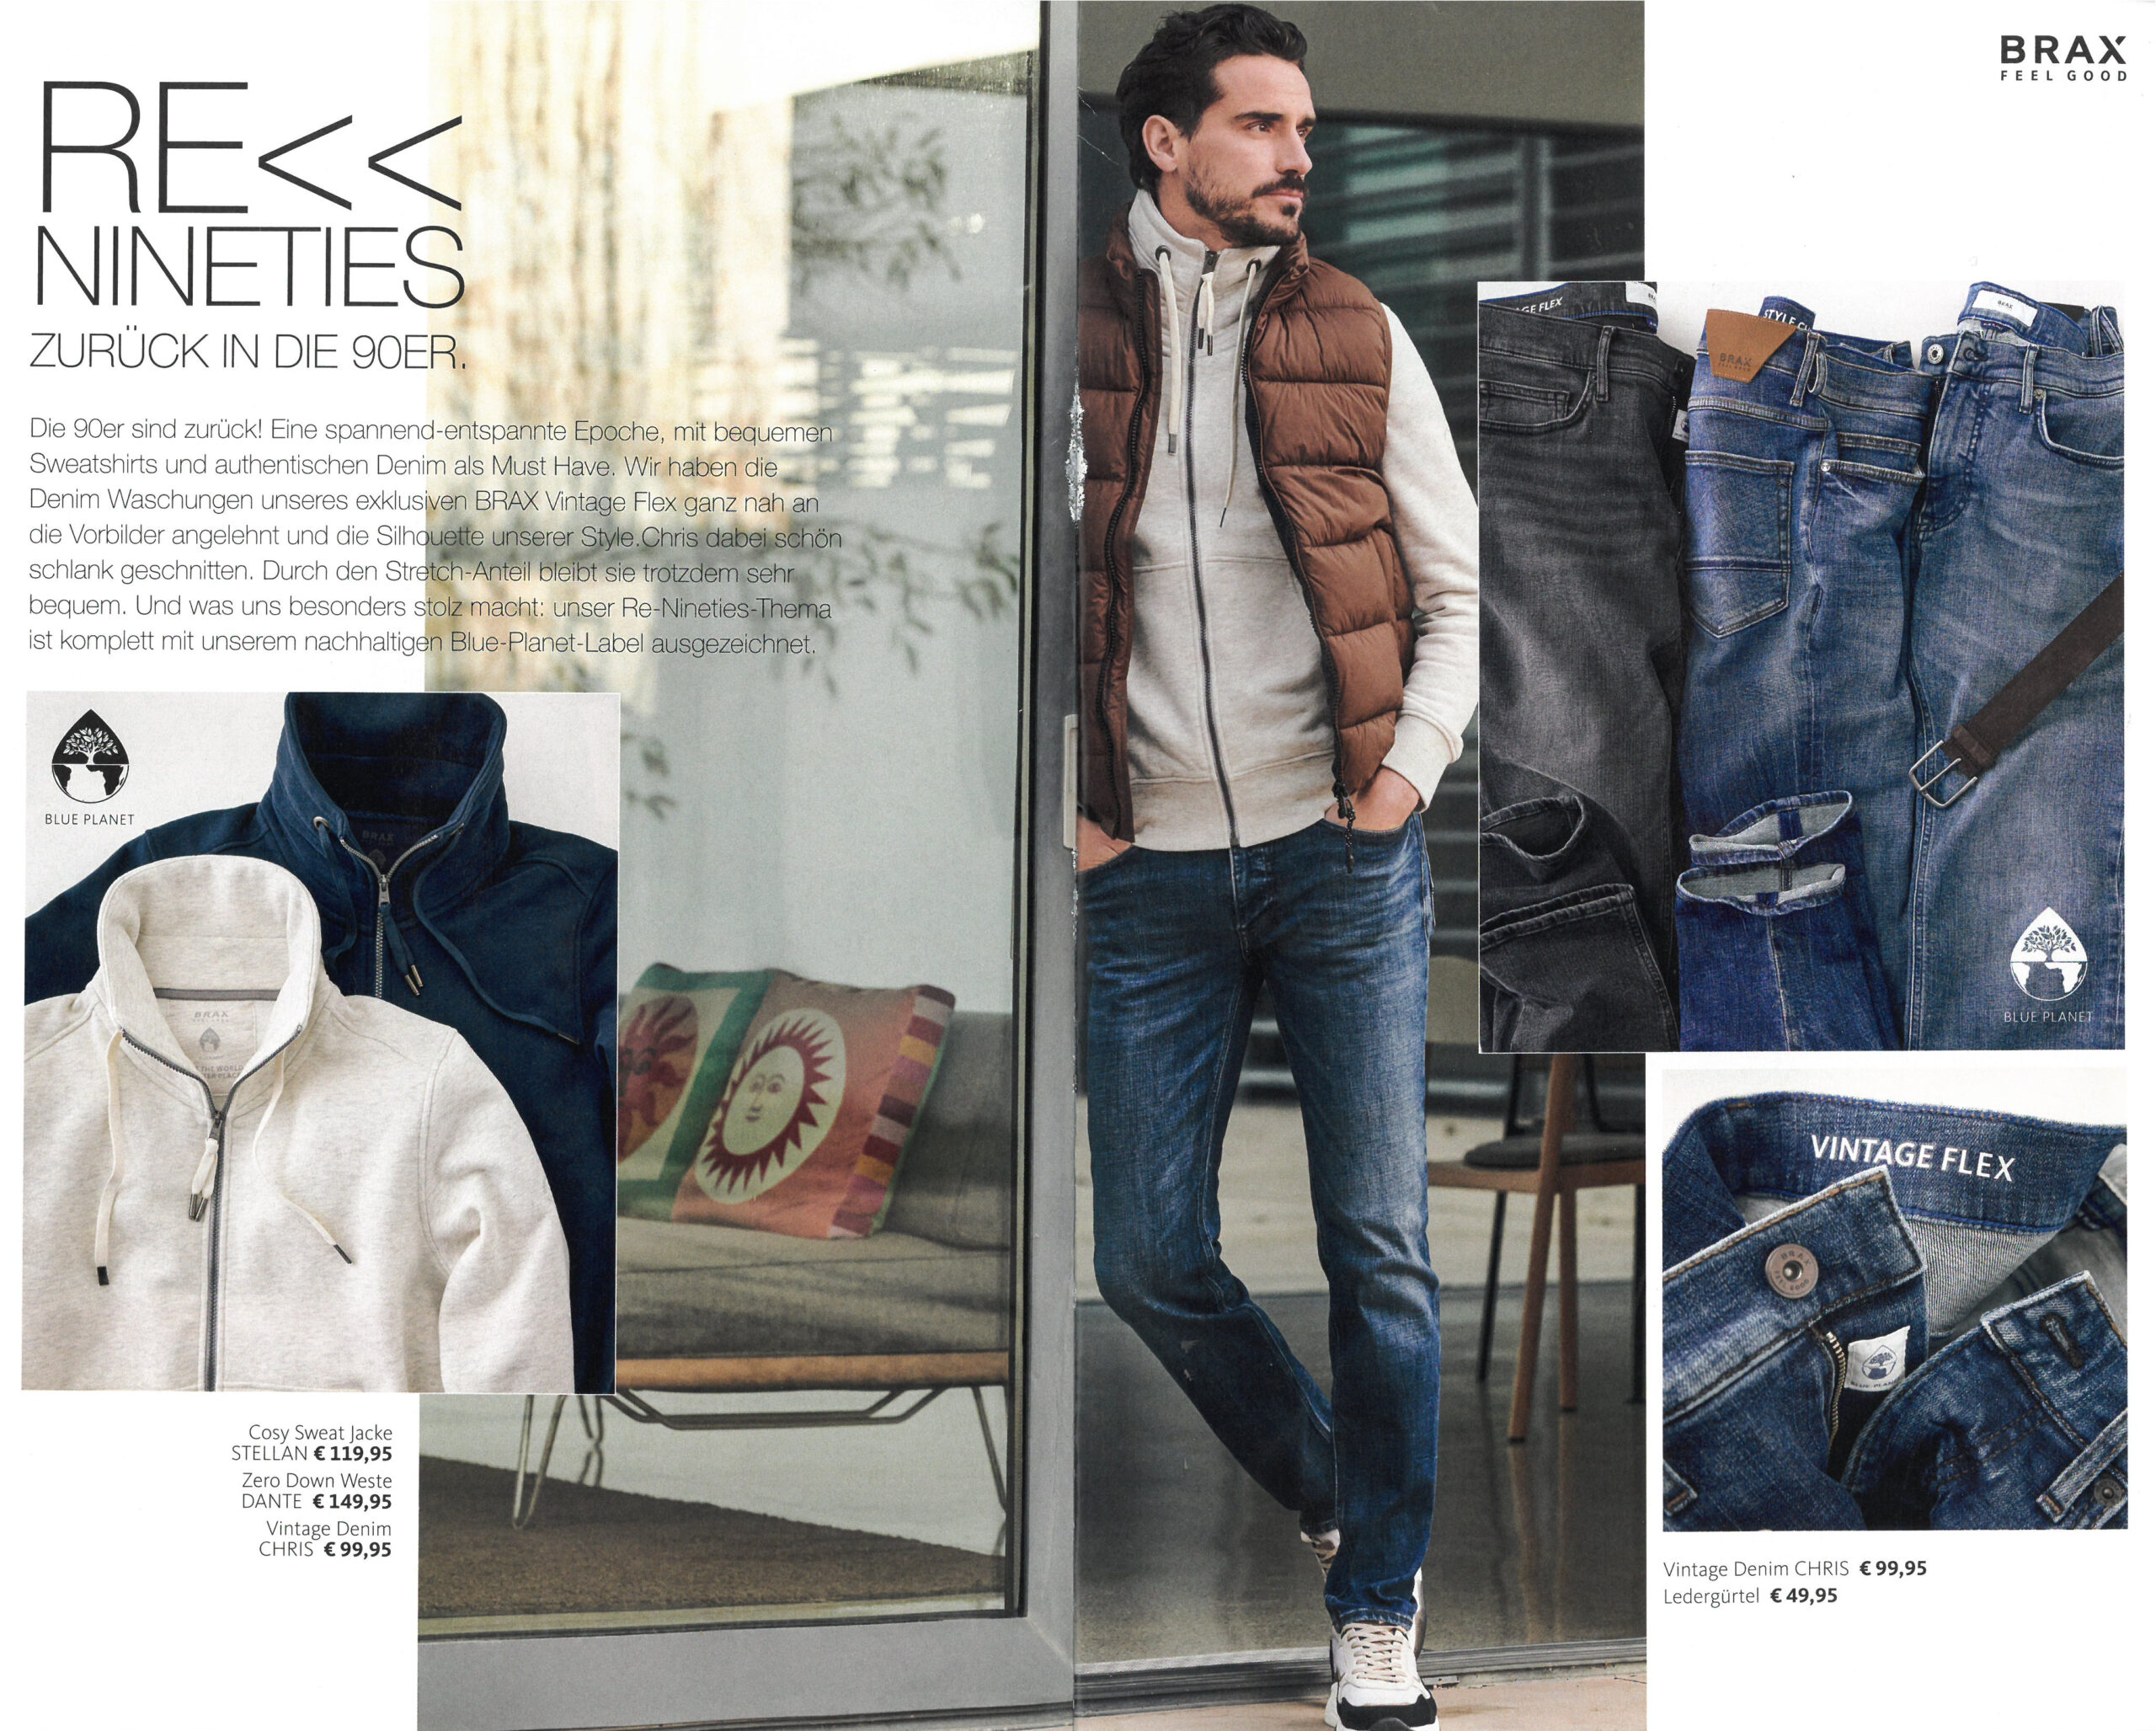 BRAX Prospekt Herbst / Winter 2022 November - Seite 5 - Hartmann Mode Shop | Gürtel